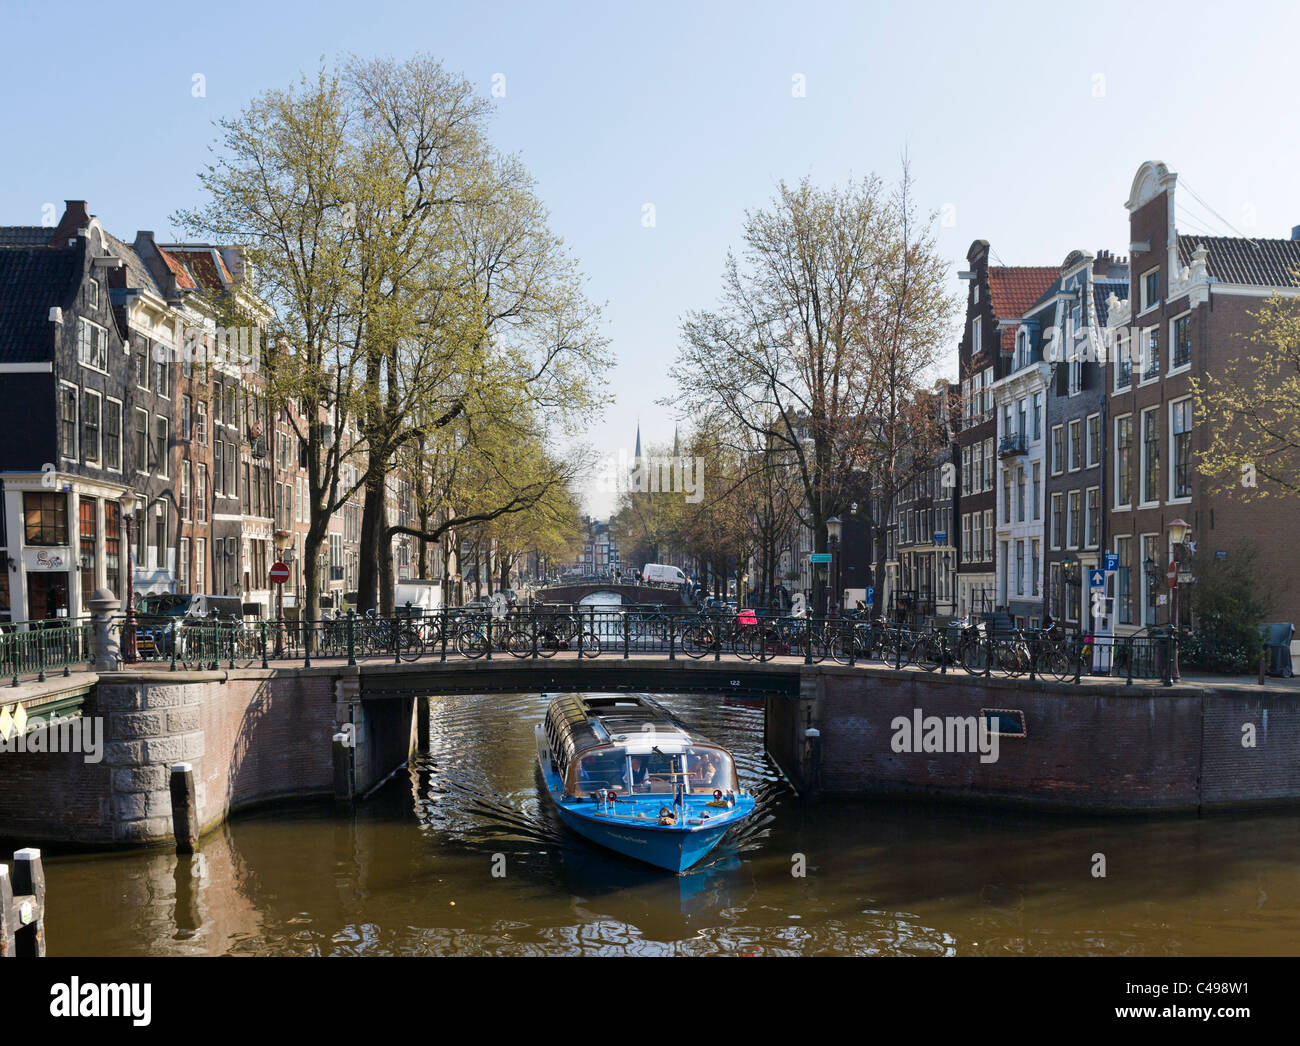 Crociera Turistica sul Leidsegracht canal vicino all'incrocio con il canale Prinsengracht, Grachtengordel, Amsterdam, Paesi Bassi Foto Stock